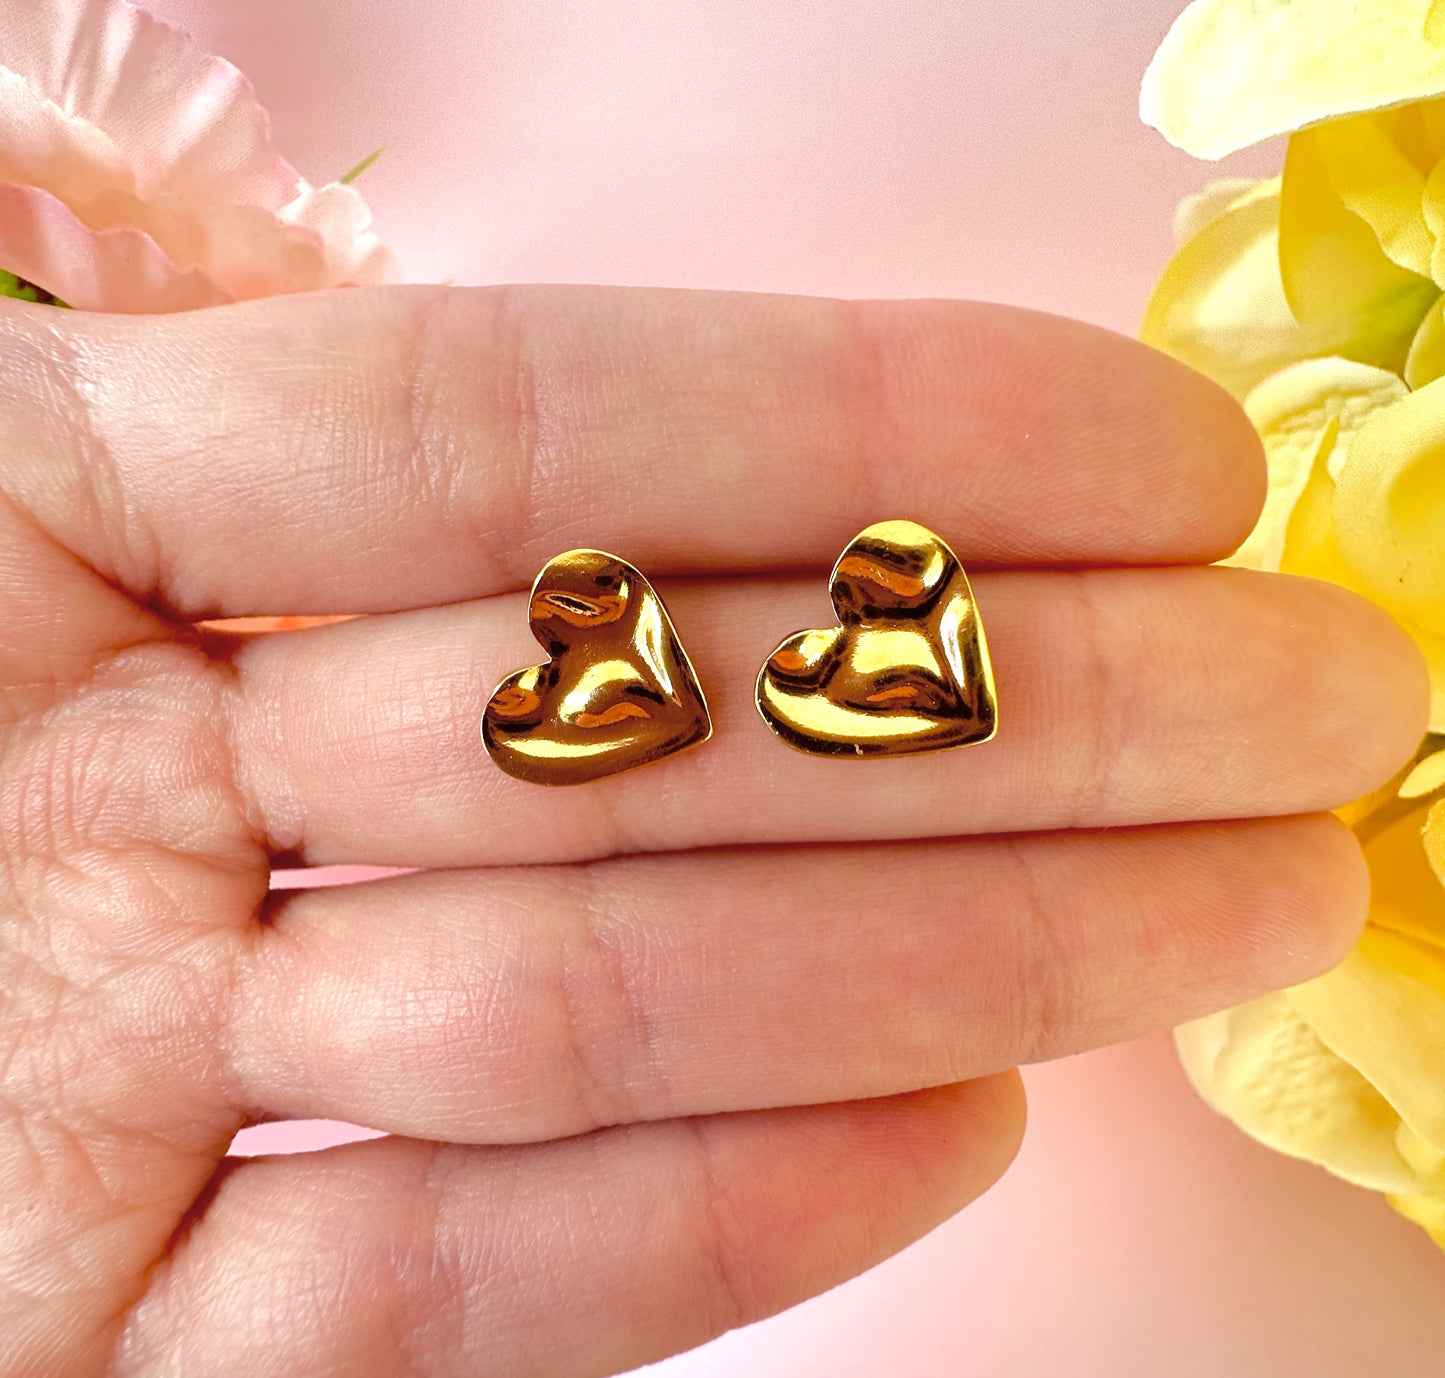 Gold Wobbly Heart stud earrings.